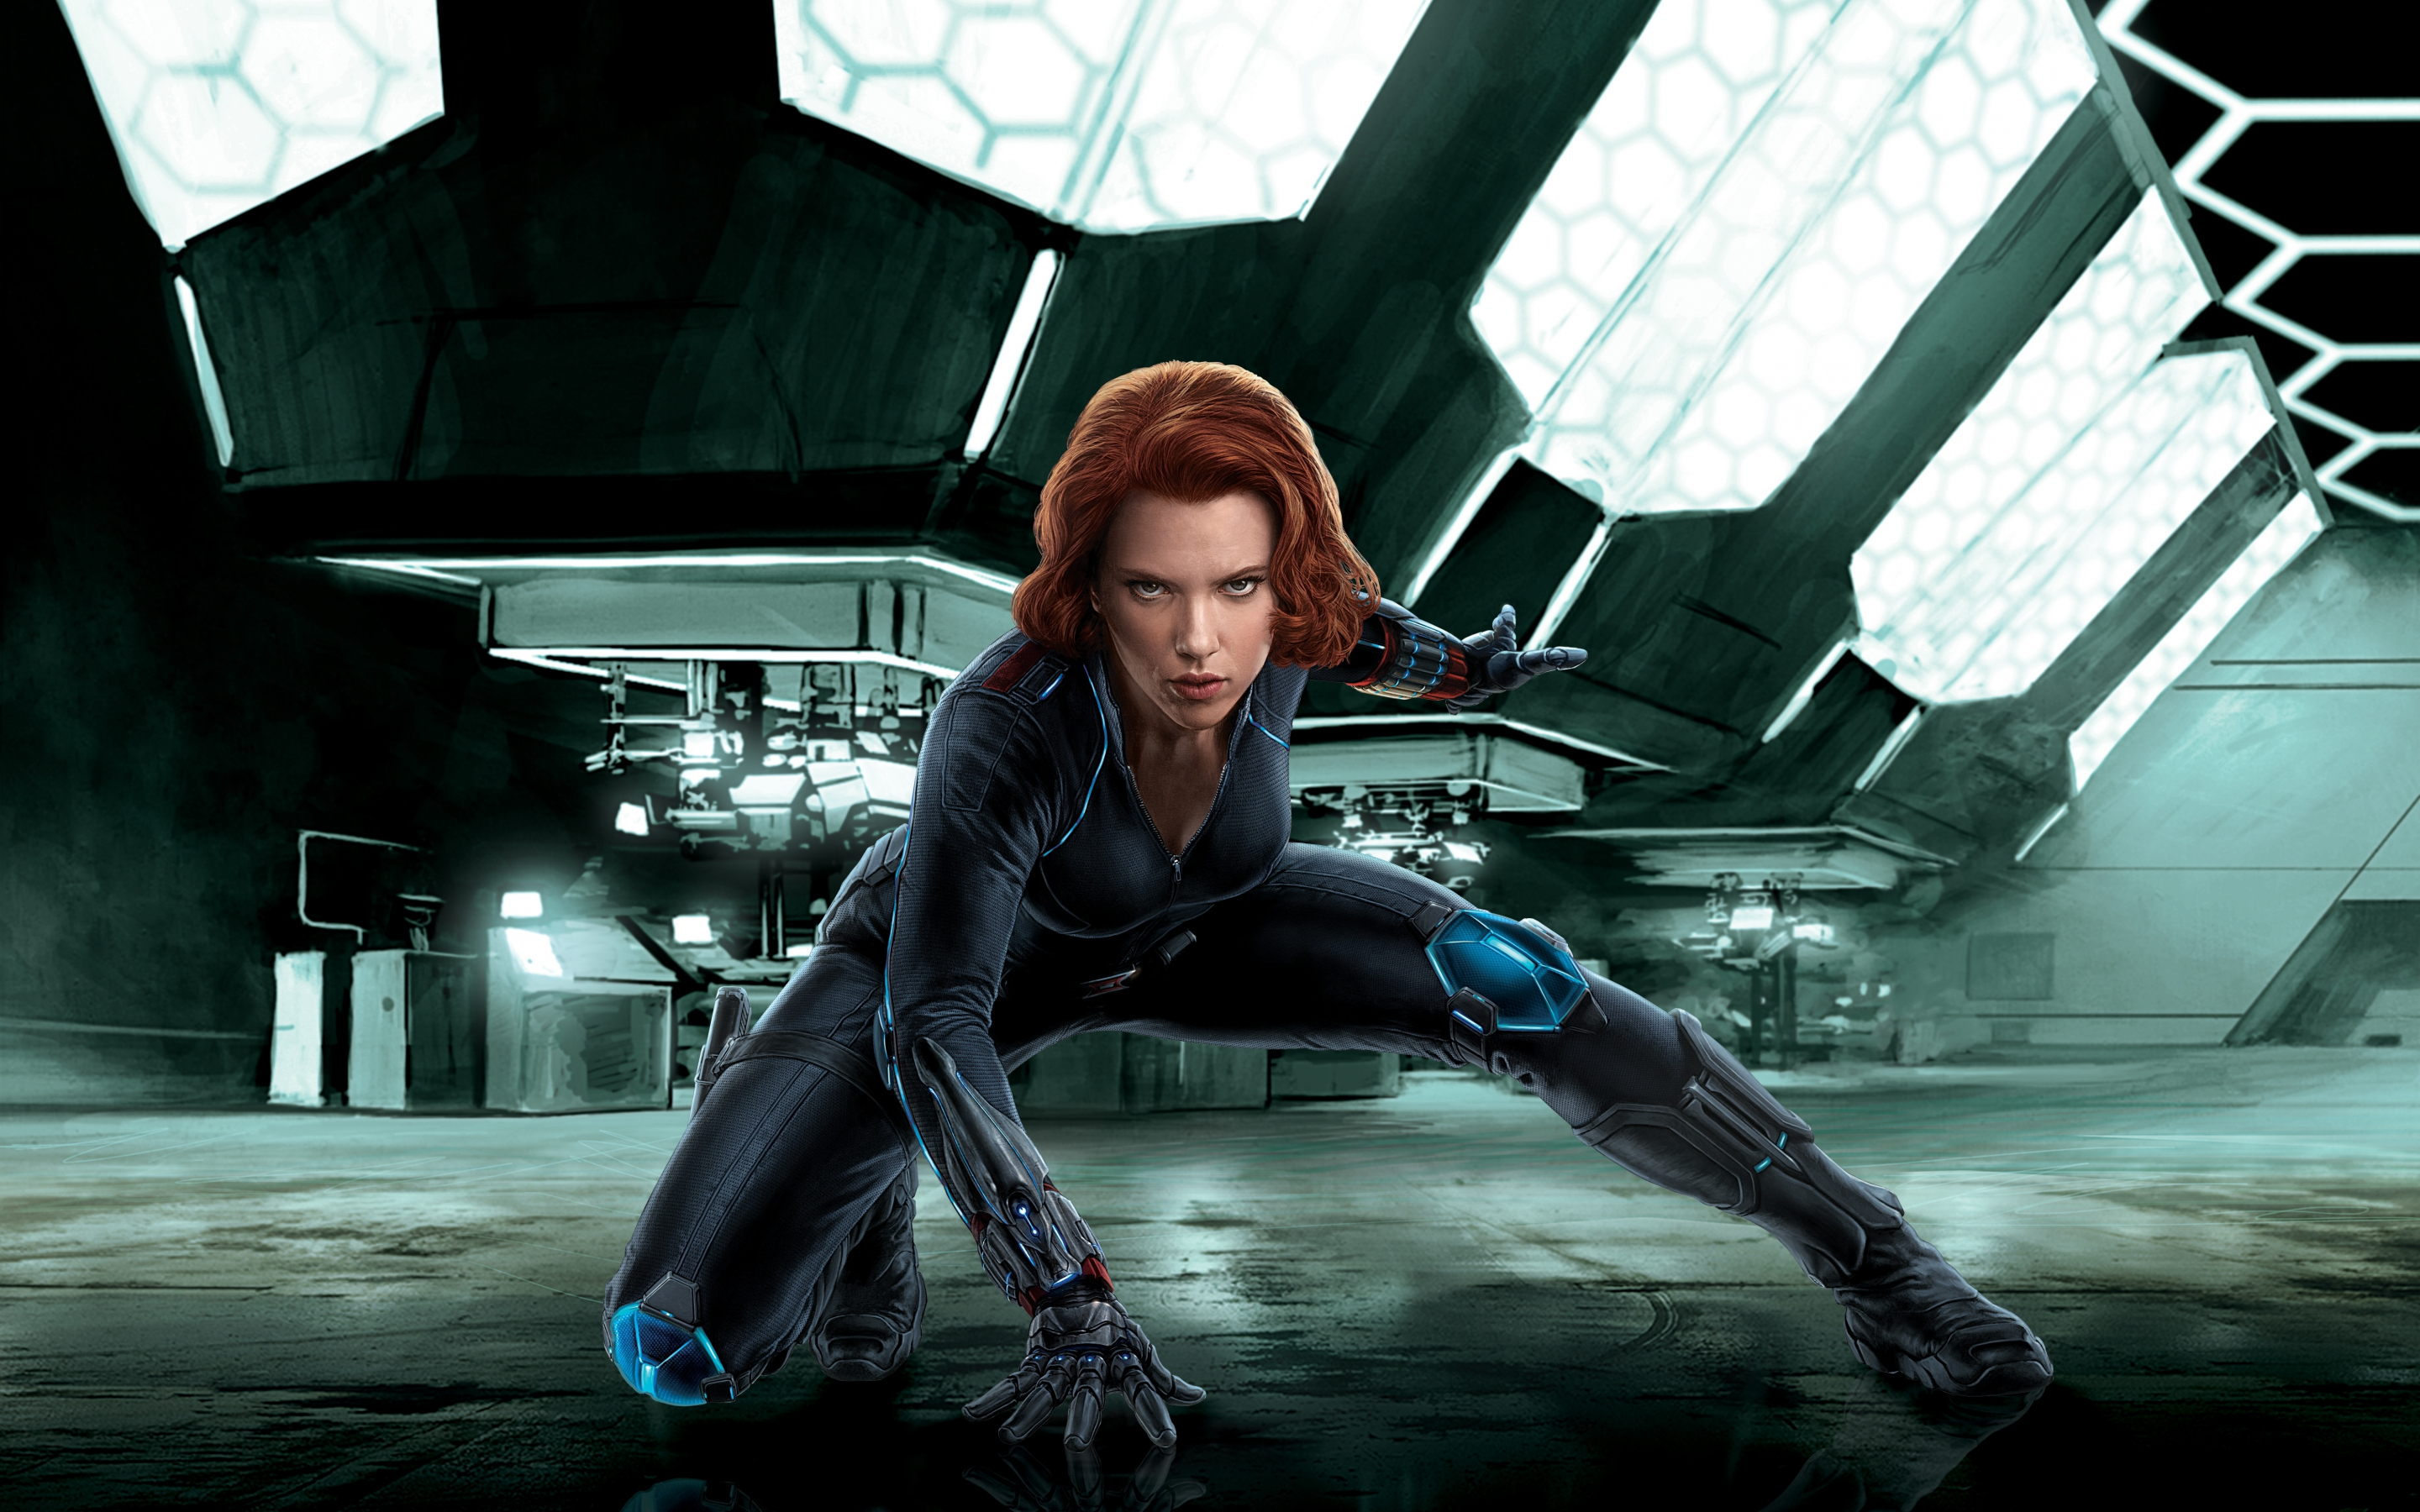 Scarlett Johansson as Black Widow, Avengers, movie, 2880x1800 wallpaper